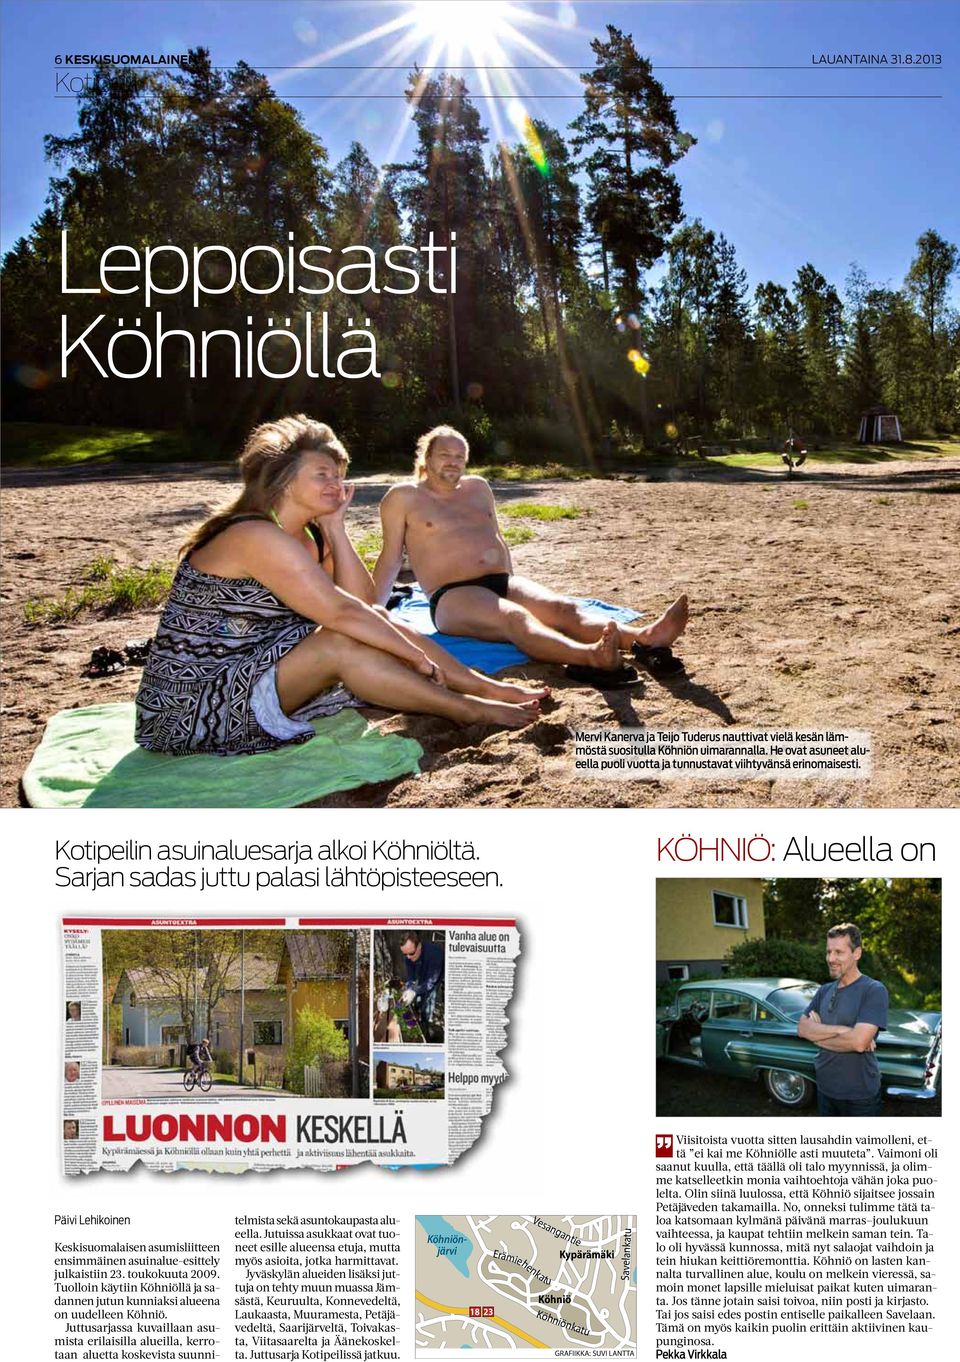 Köhniö: Alueella on Päivi Lehikoinen Keskisuomalaisen asumisliitteen ensimmäinen asuinalue-esittely julkaistiin 23. toukokuuta 2009.